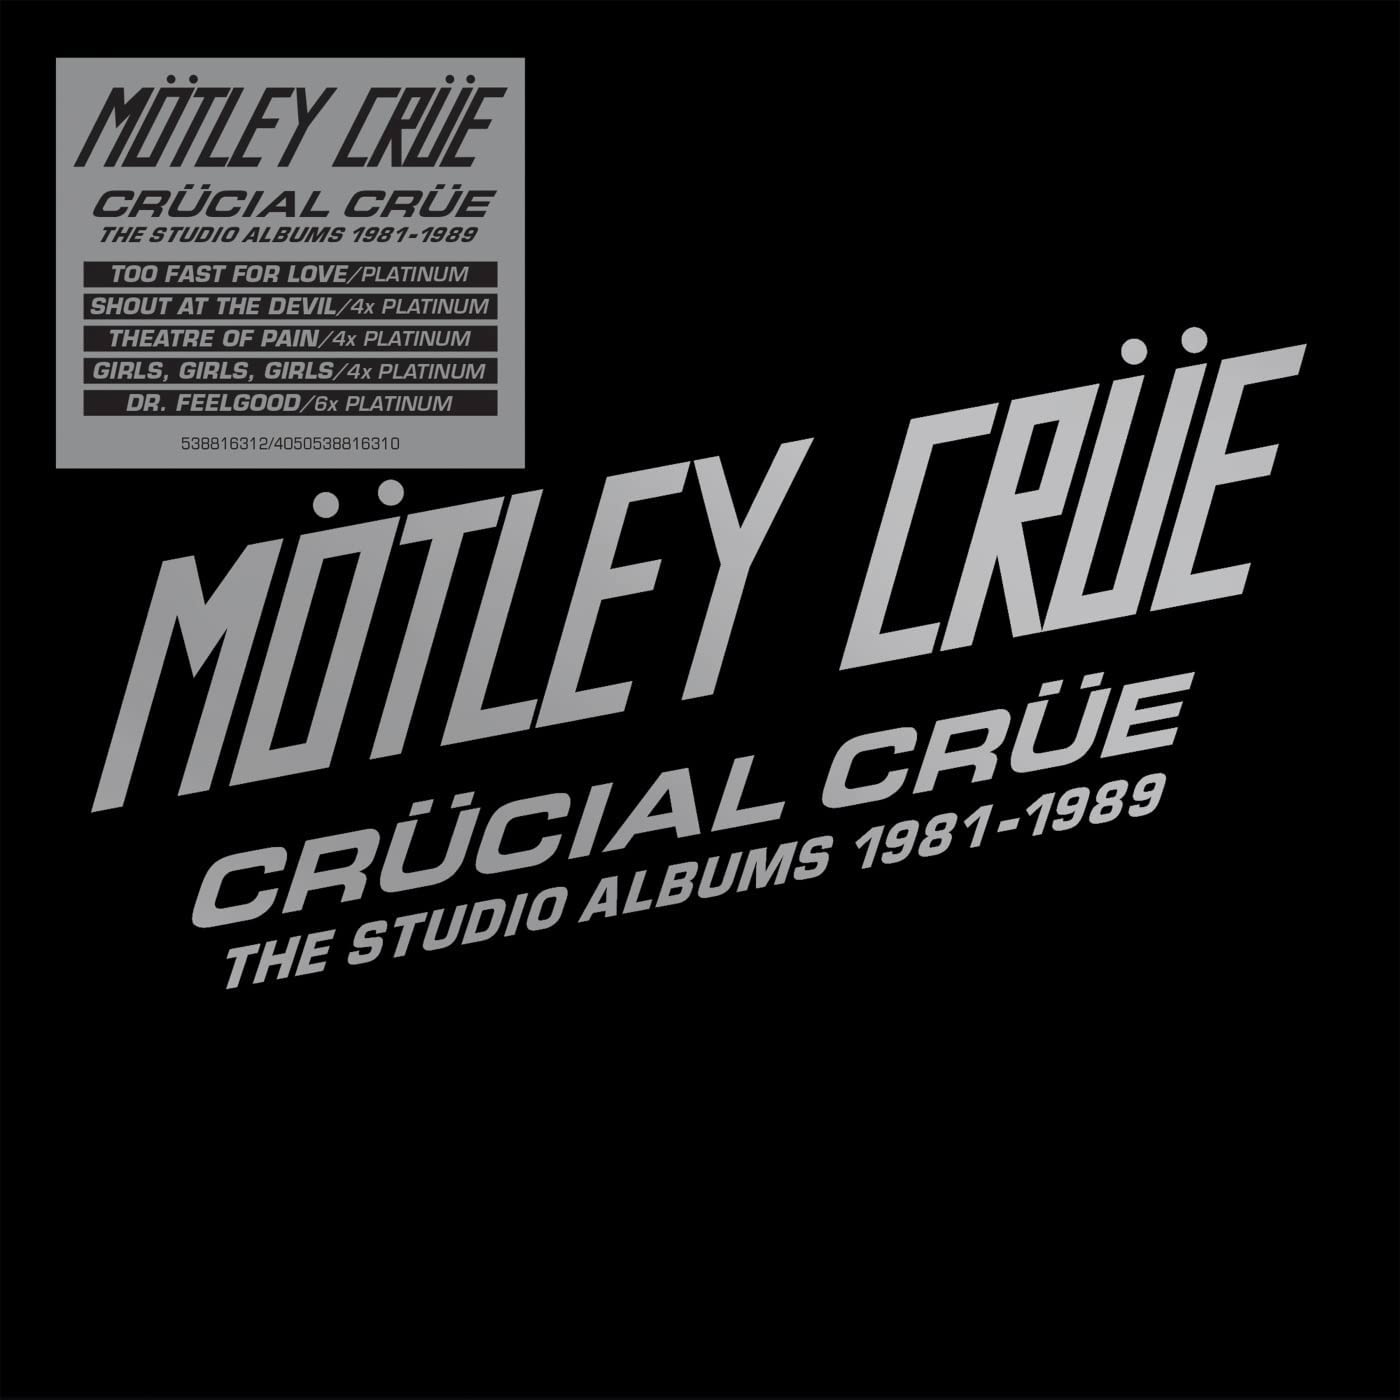 MÖTLEY CRÜE - 'Crücial Crüe' Box Set - 5 CD Boxset Review - All 